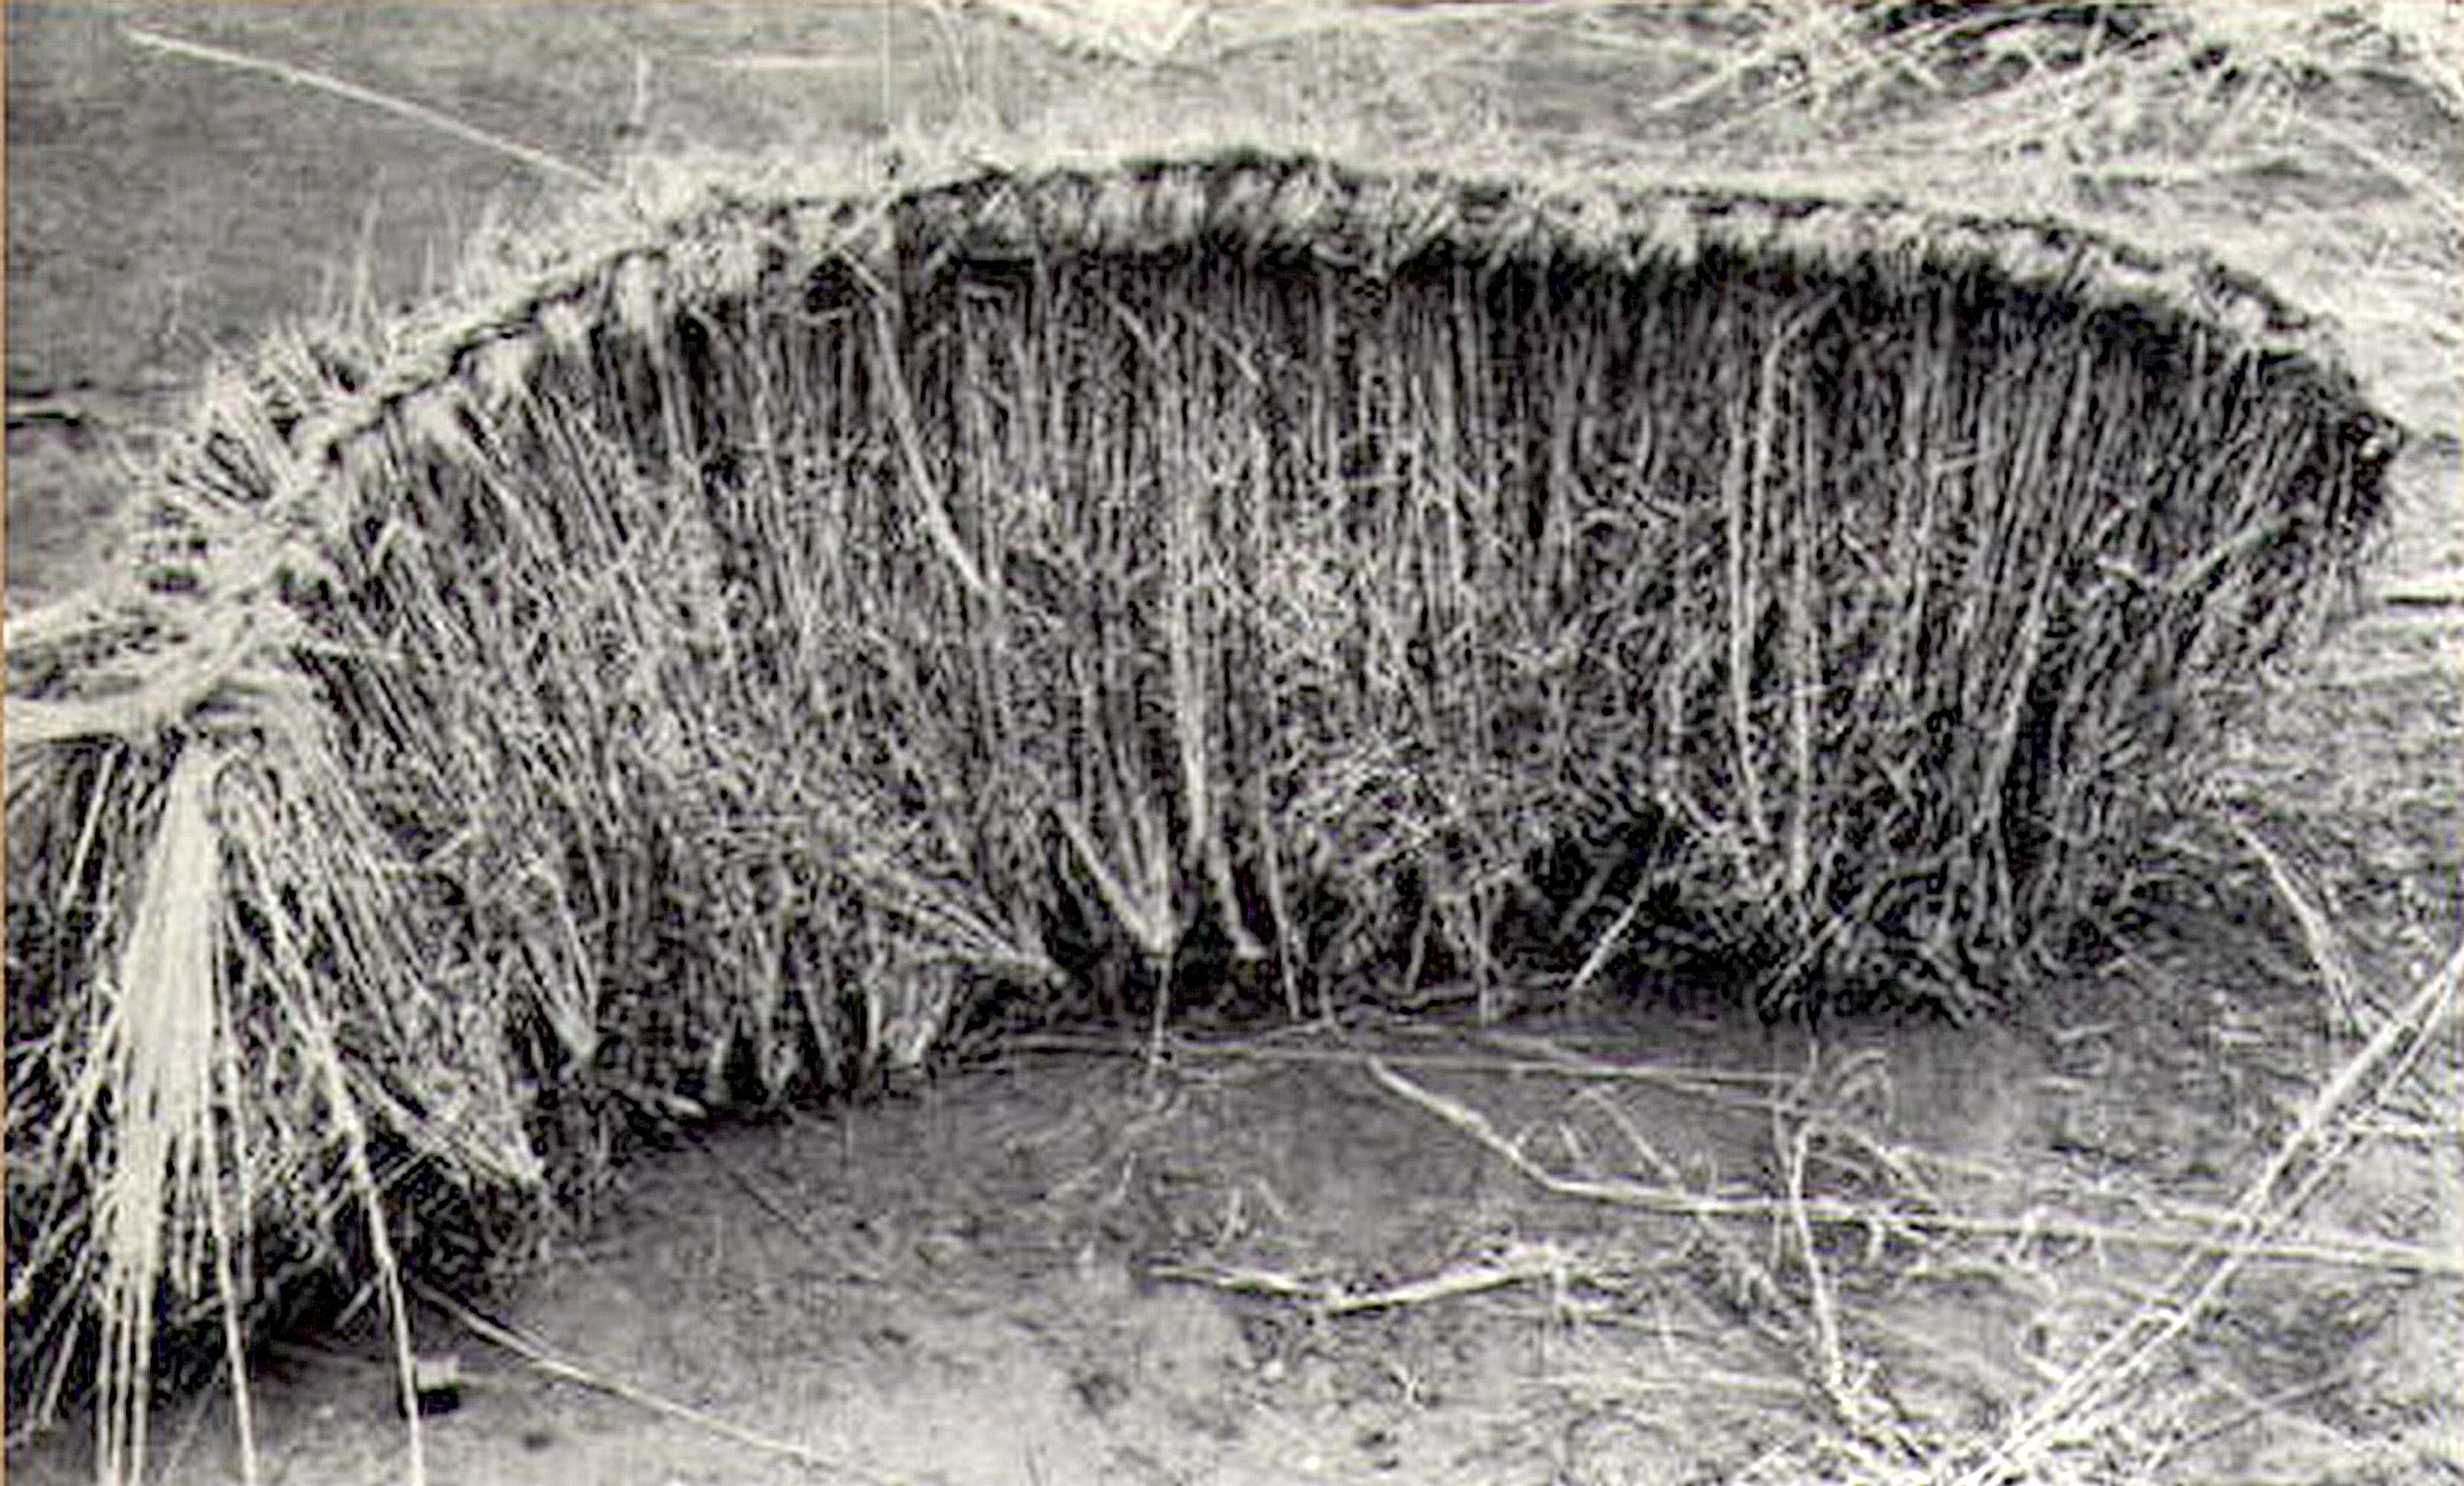  Ветровой заслон из травы, 1966 год, западная Австралия (samuseum.sa.gov.au).